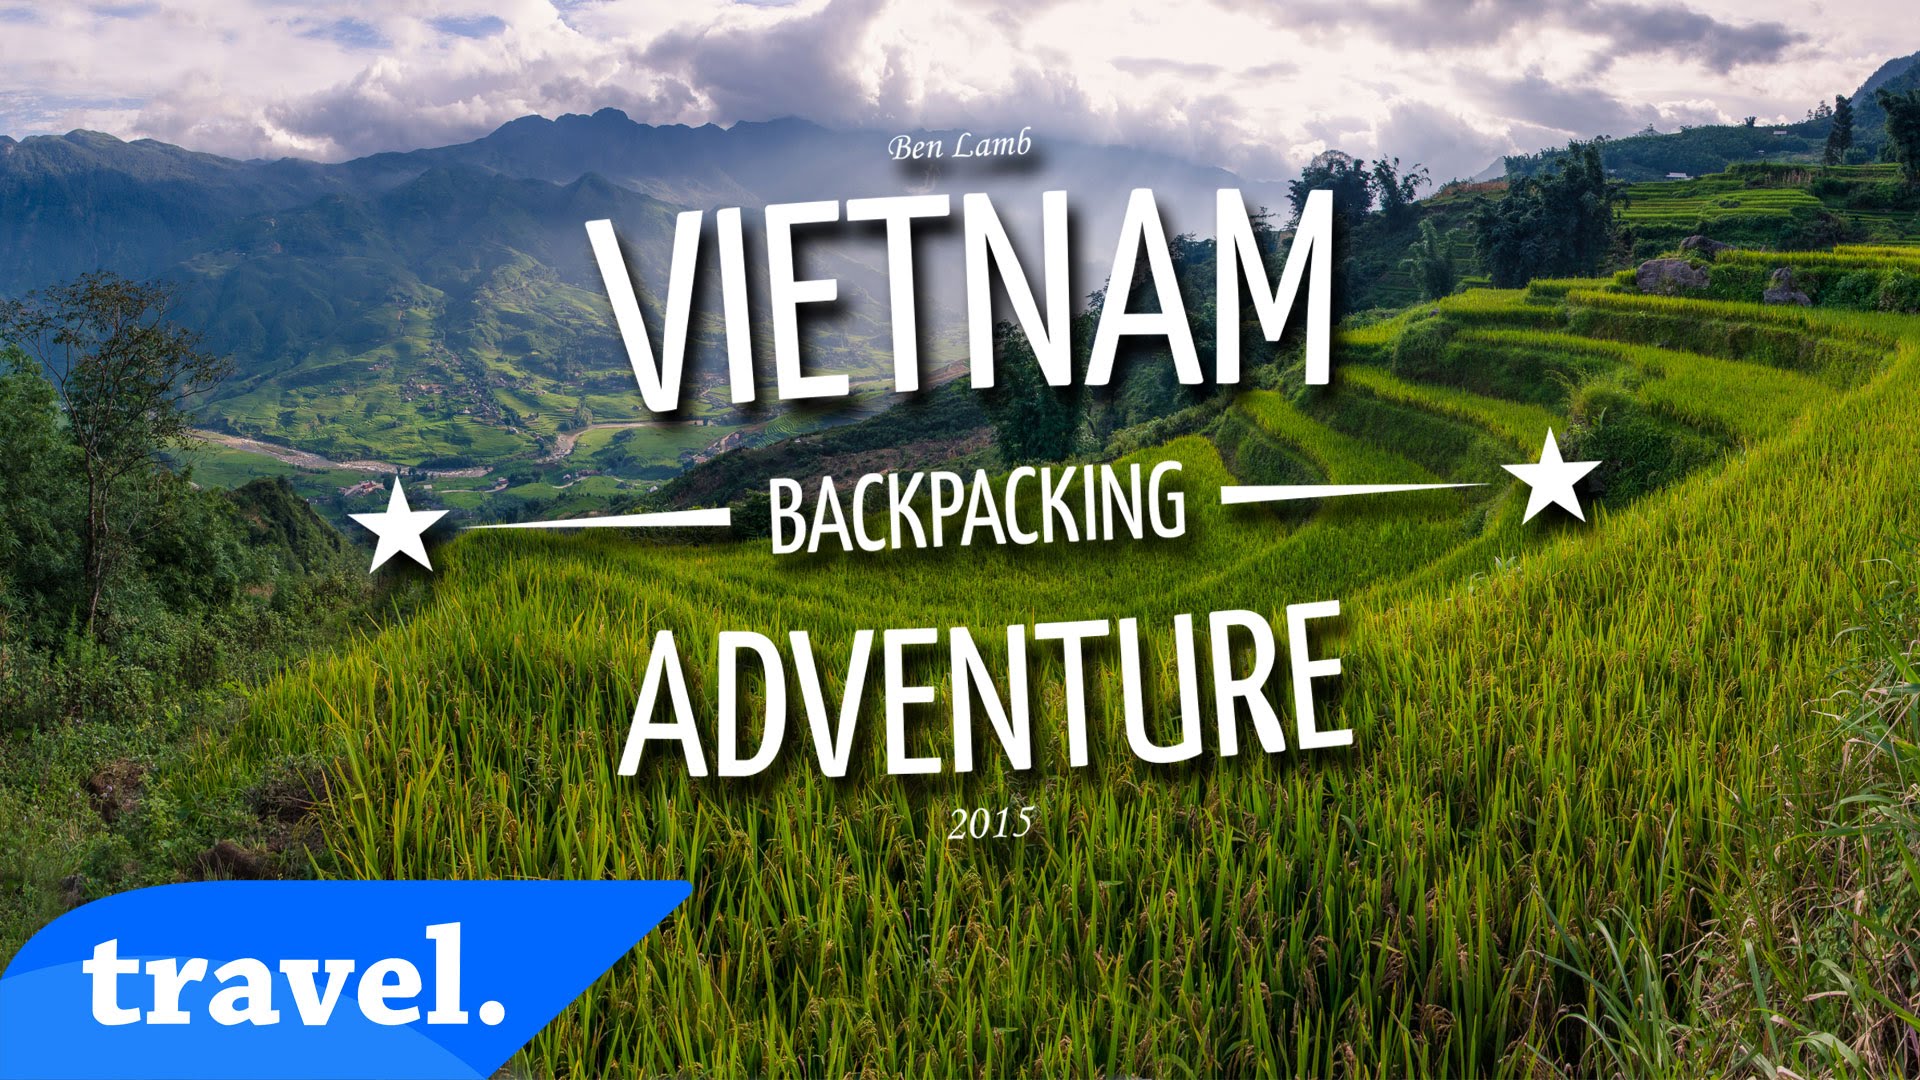 Nào ta cùng " phượt bụi" quanh Việt Nam!